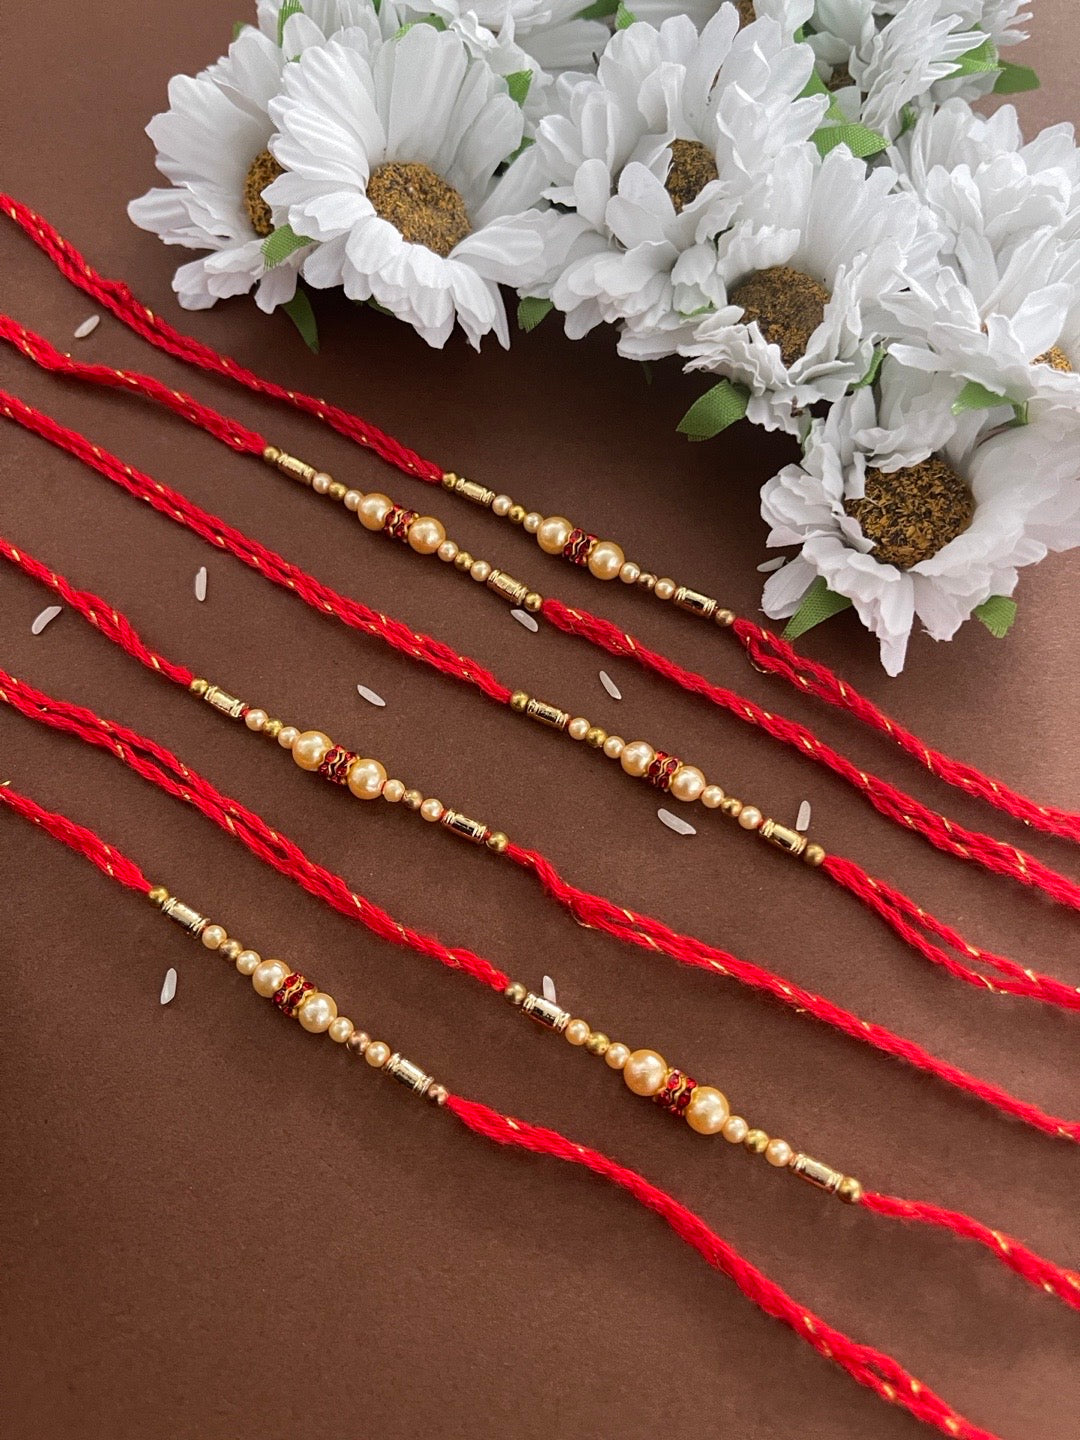 image for (Rakhi Set of 6) Beautiful Simple Pearl Rakhi With Beads Red Thread Rakhi For Raksha Bandhan